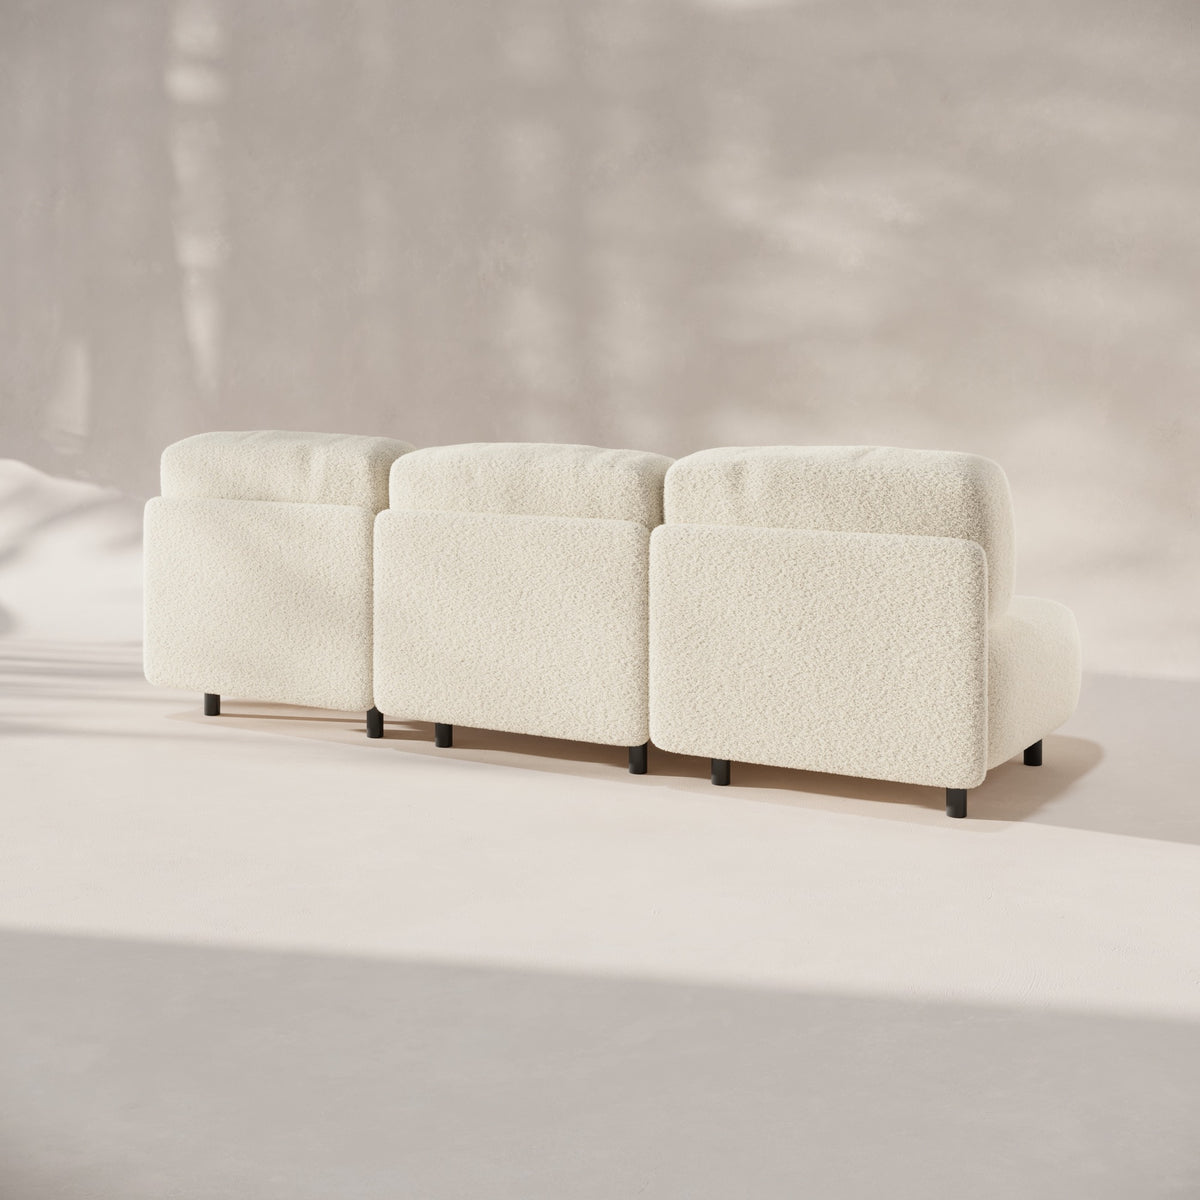 Sofa con modulos blanco - Pummba II